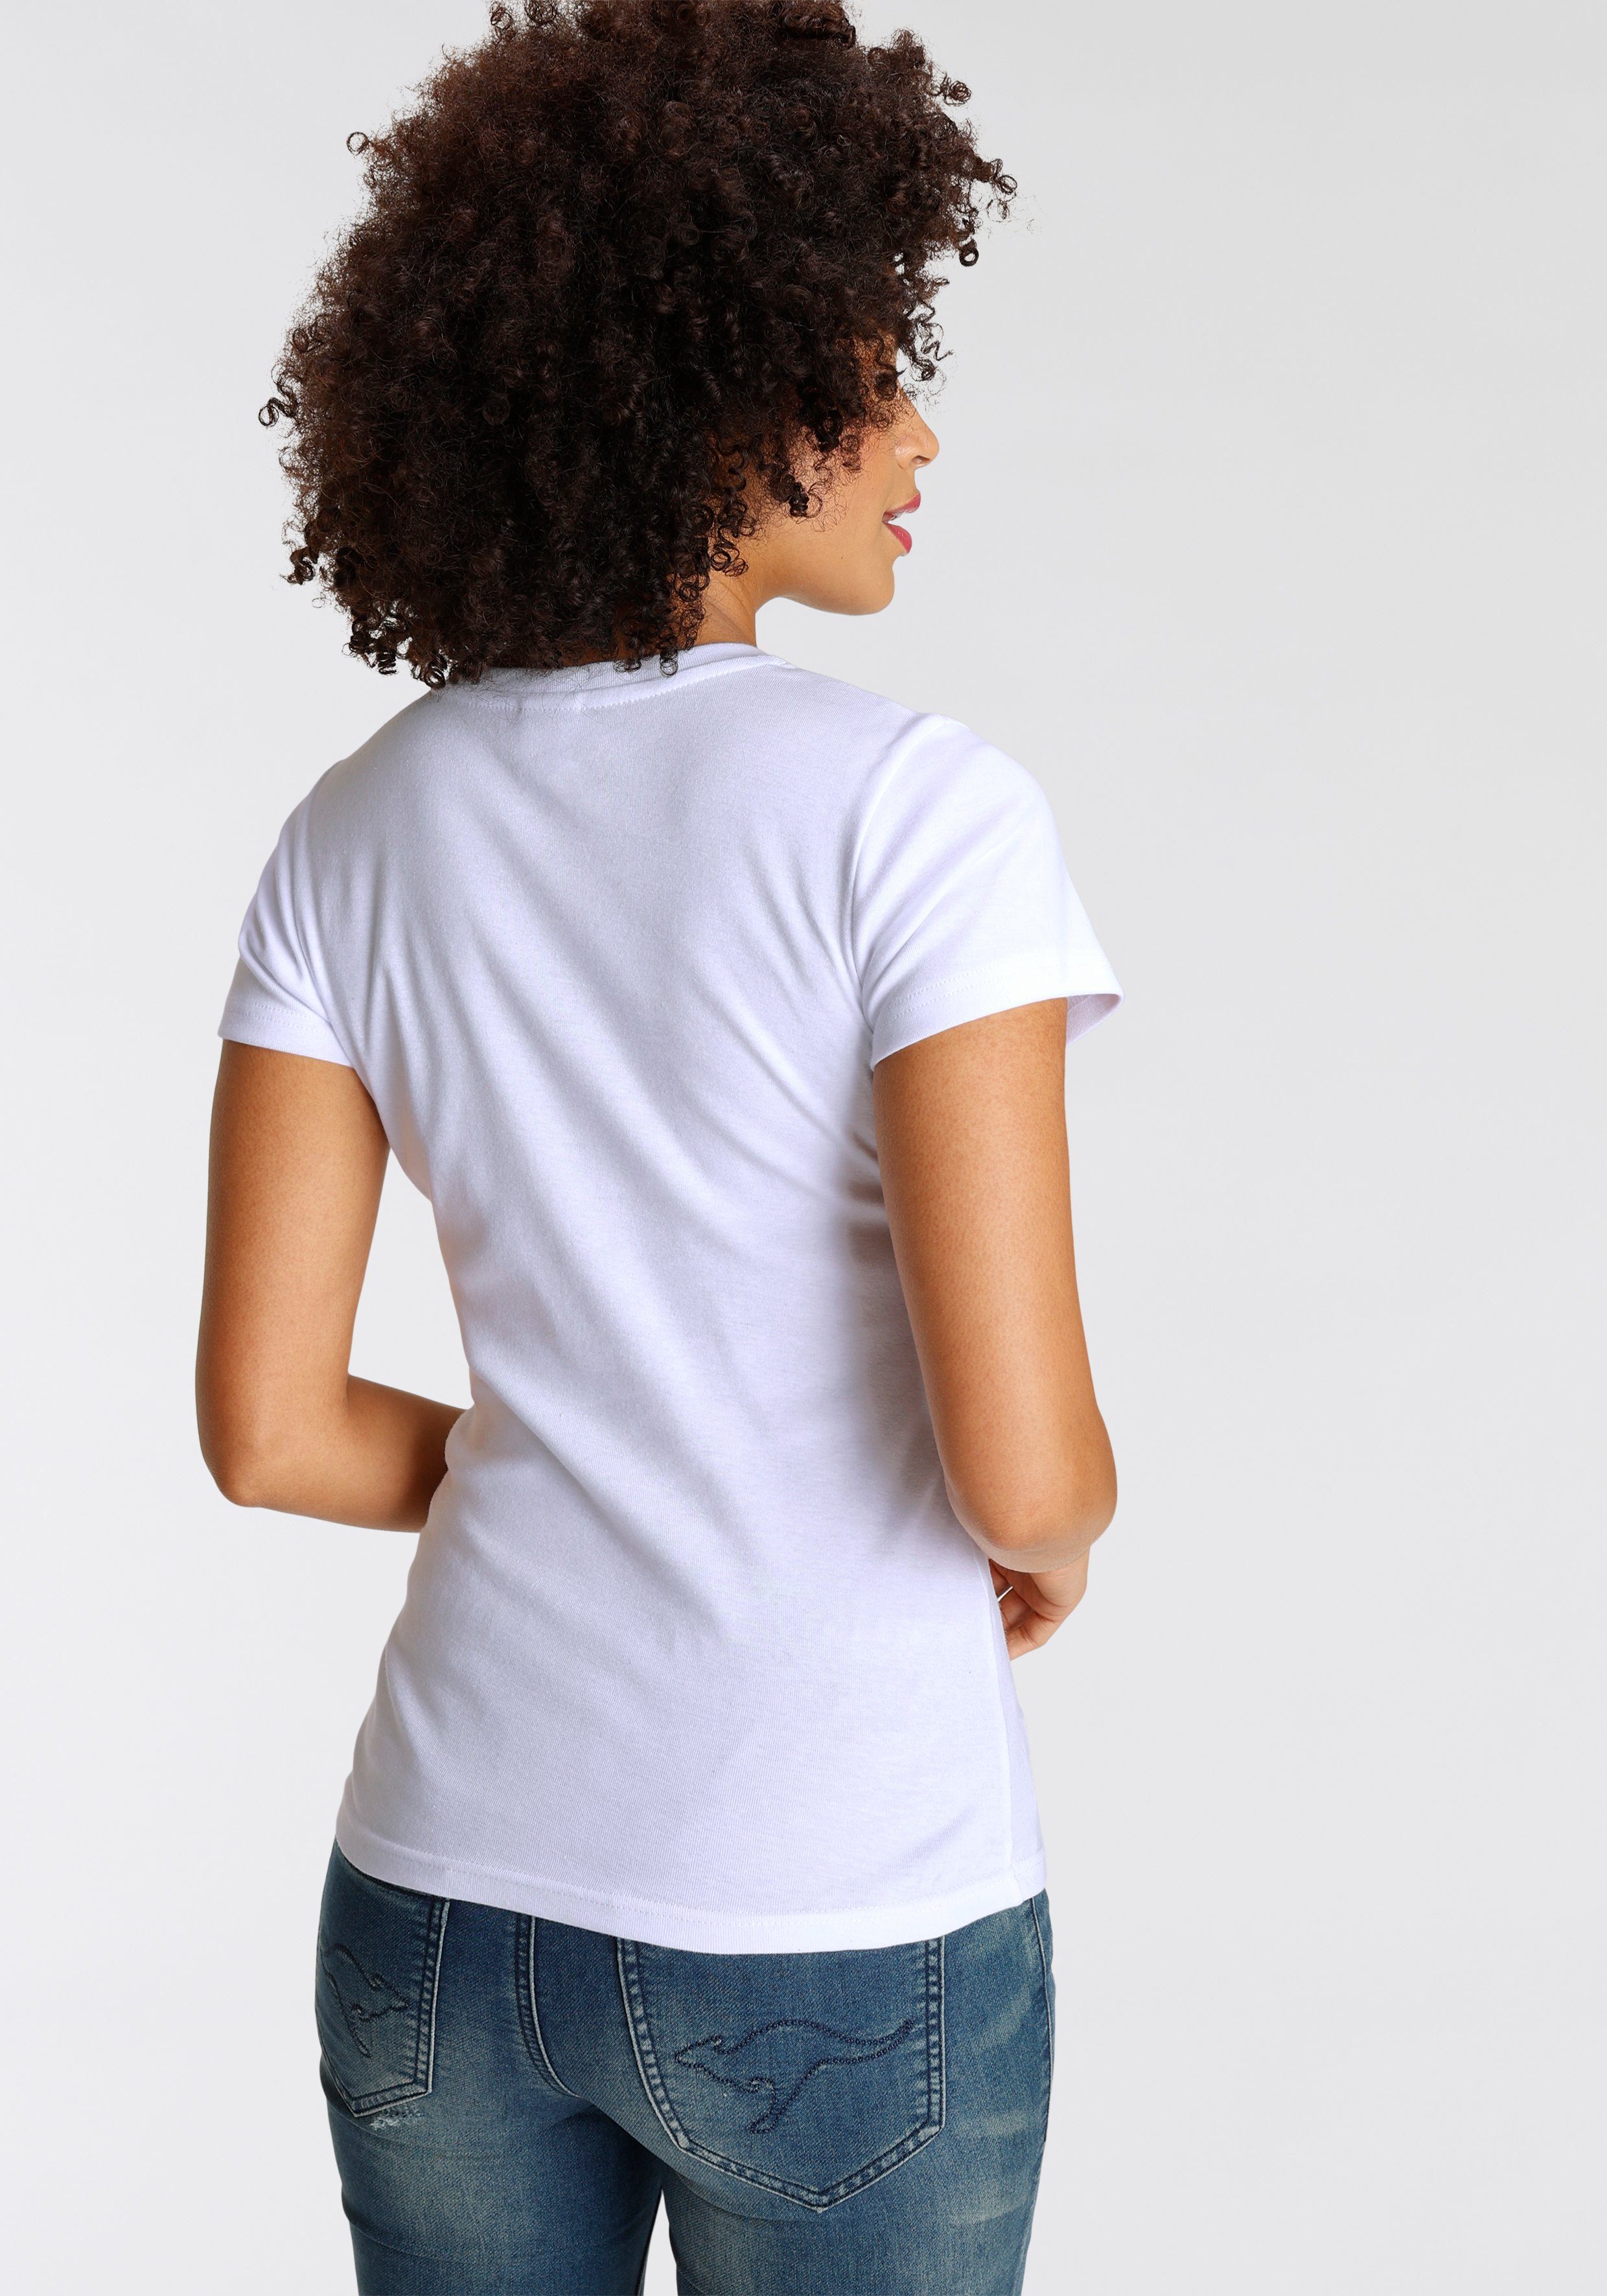 KangaROOS T-Shirt Originaldesign mit lizenziertem weiß